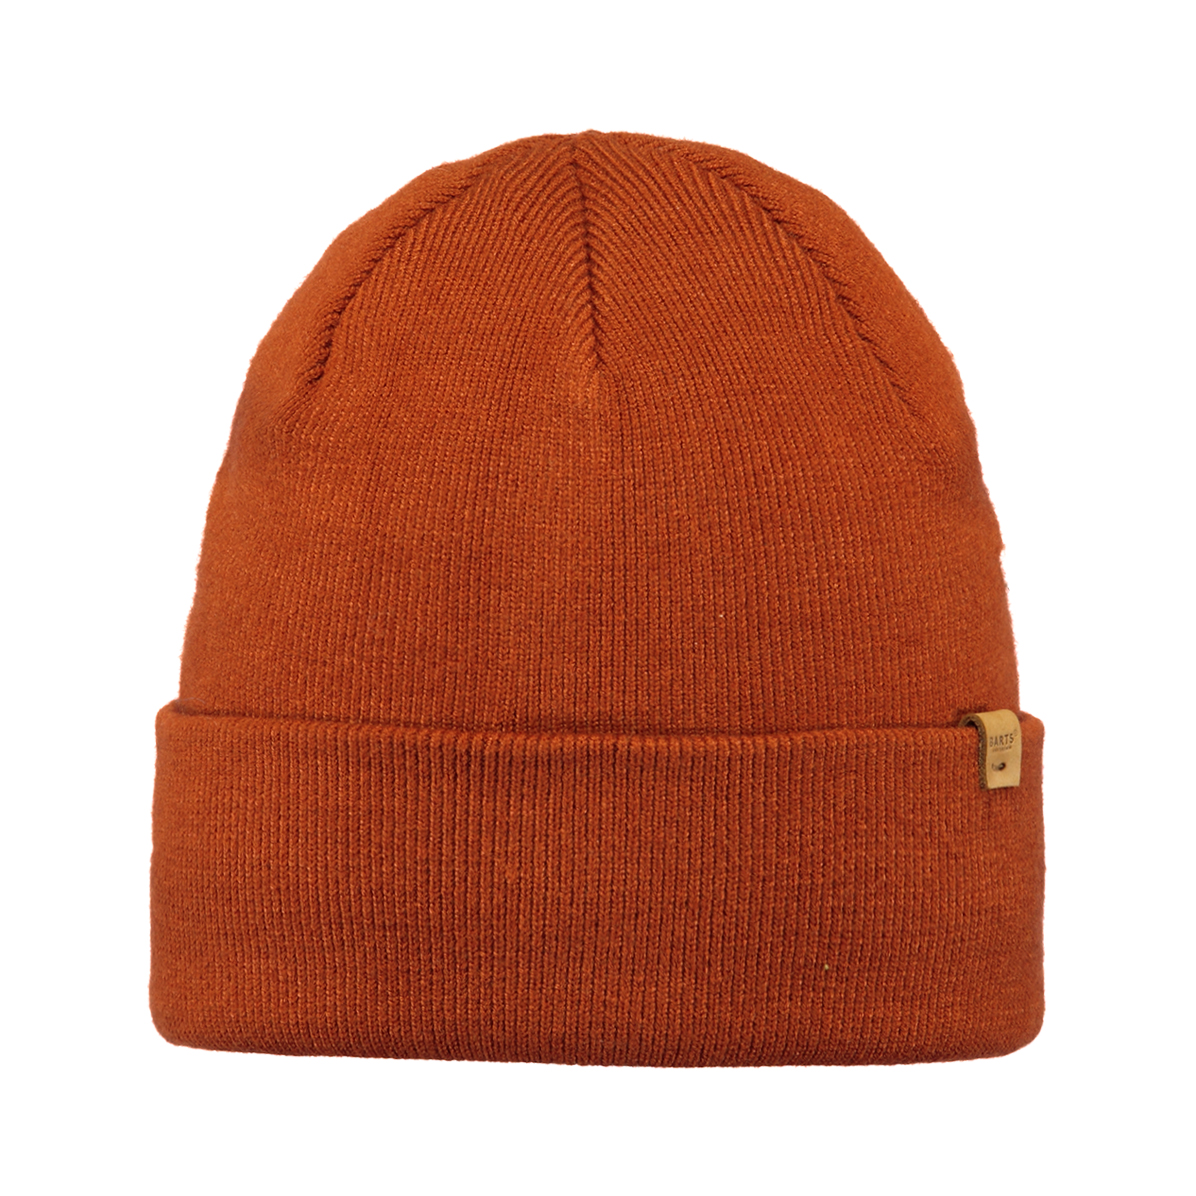 Willes Beanie - Mützen / 111 pepo orange 4040 Hüte Caps - - Artikelnummer: 